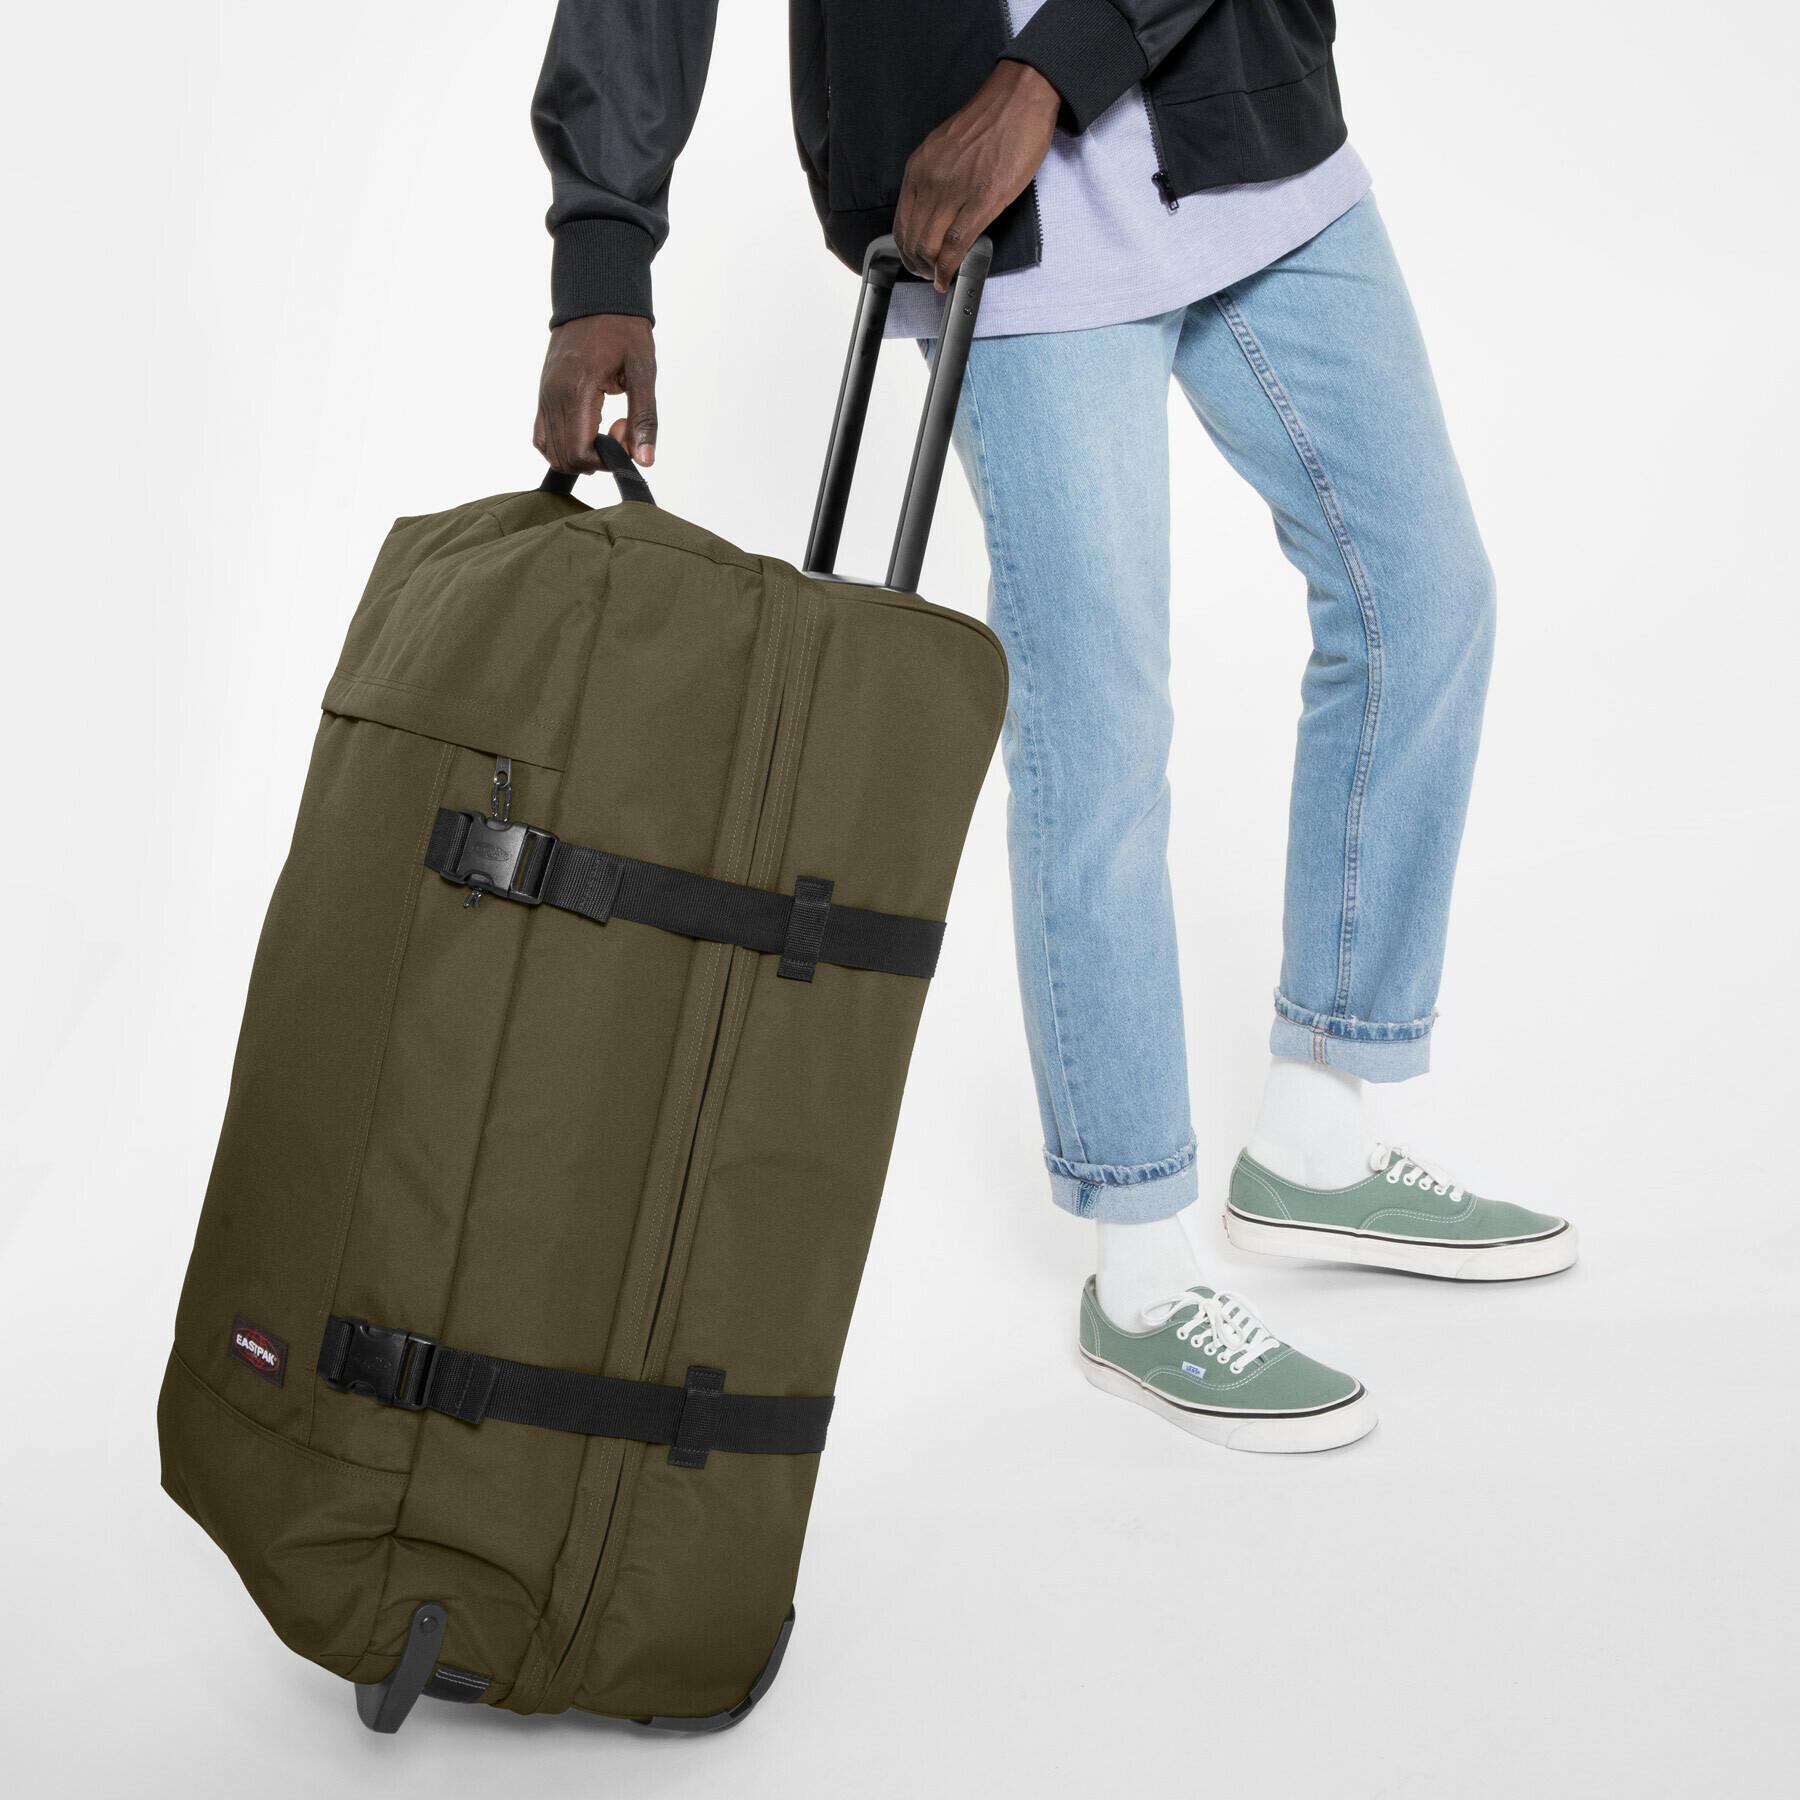 Travel bag Eastpak Tranverz L